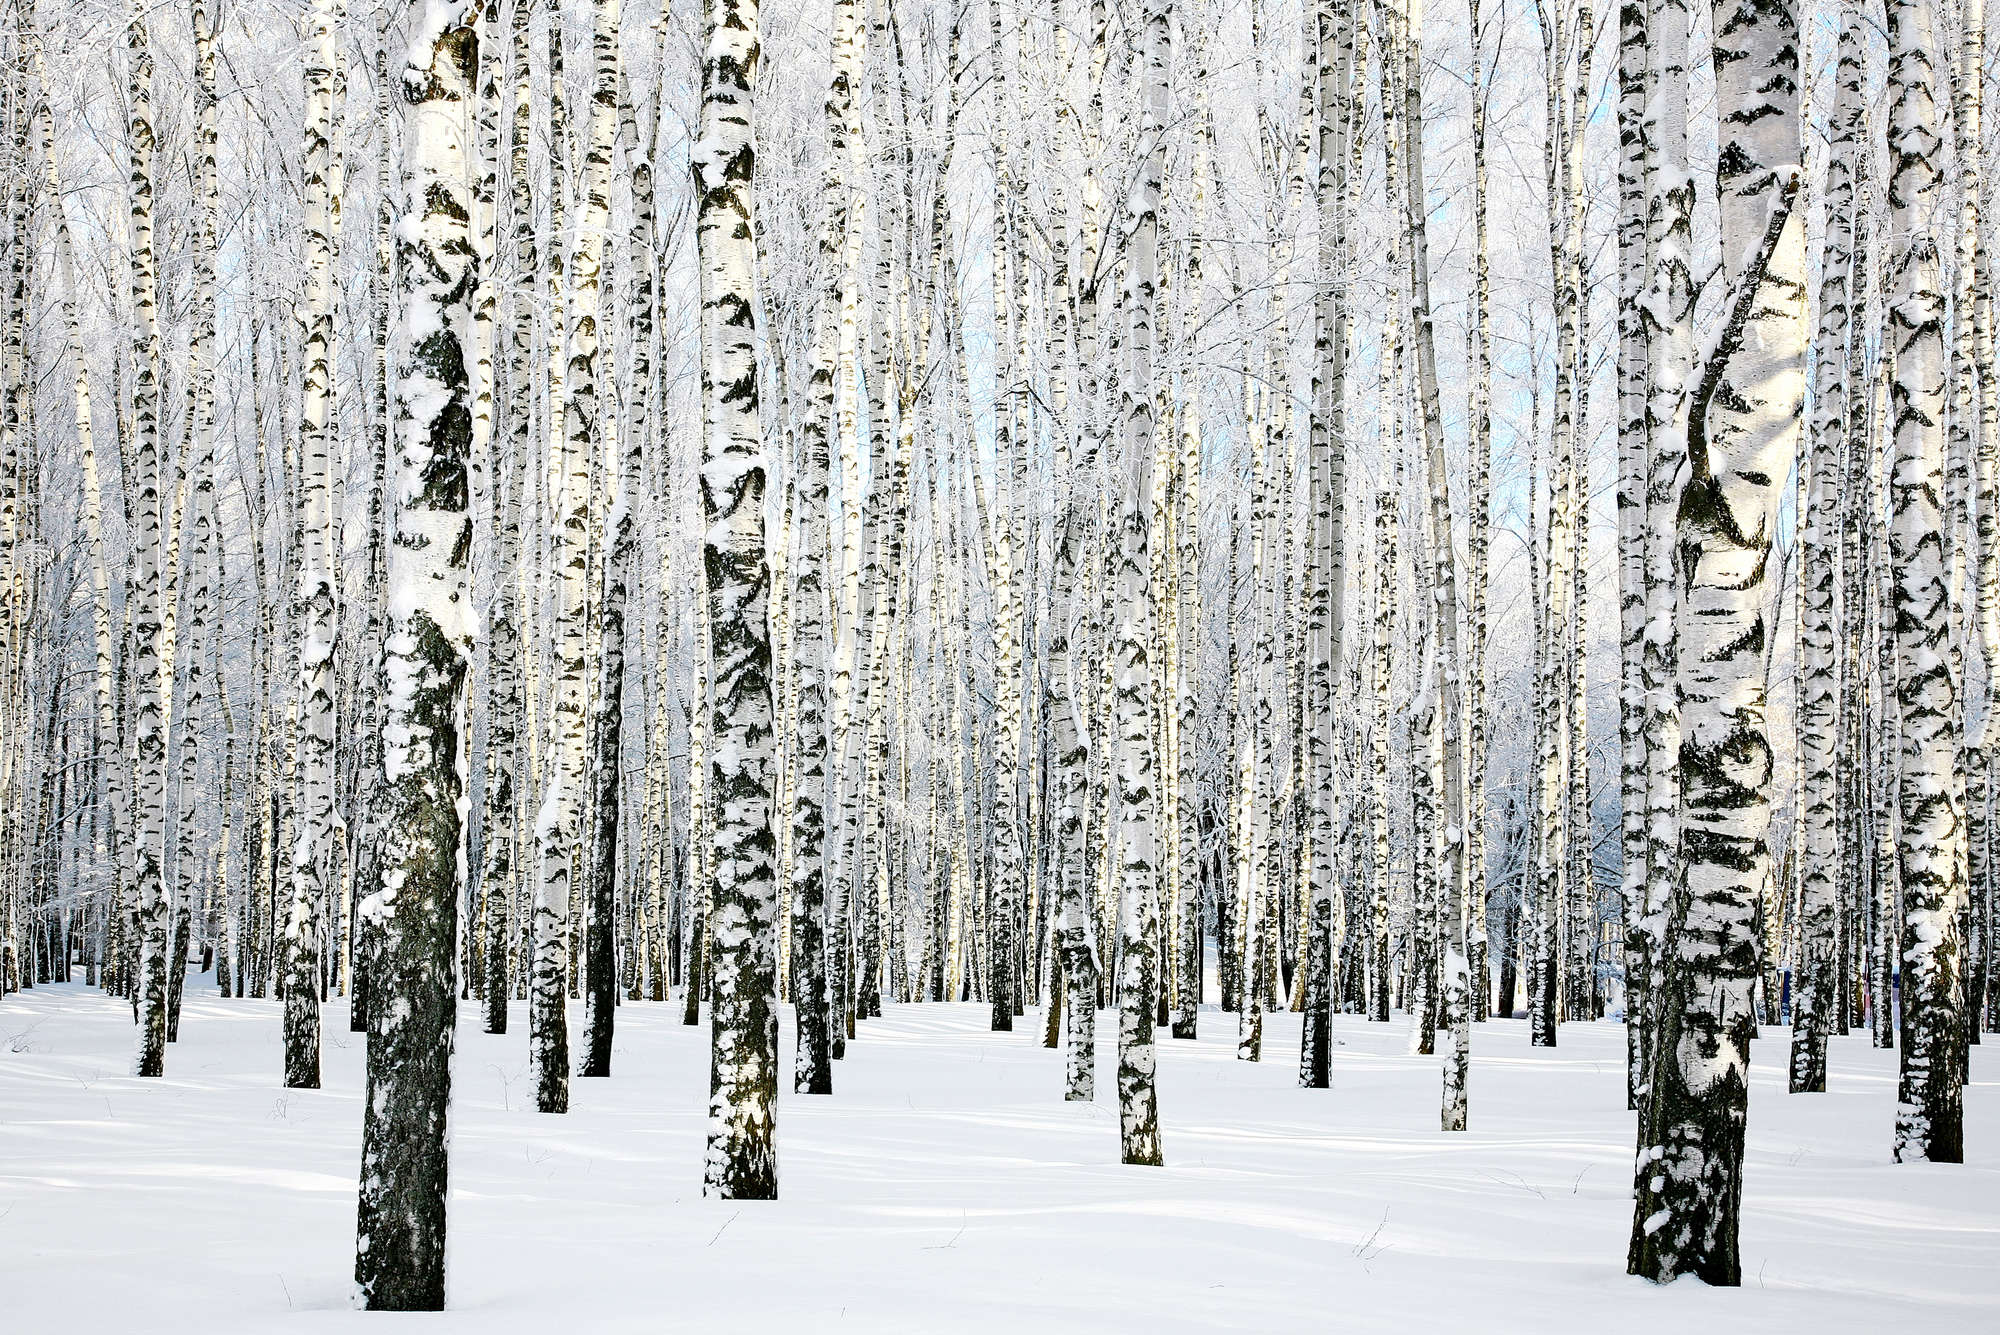             Papel pintado de naturaleza bosque de abedules en invierno sobre vellón texturizado
        